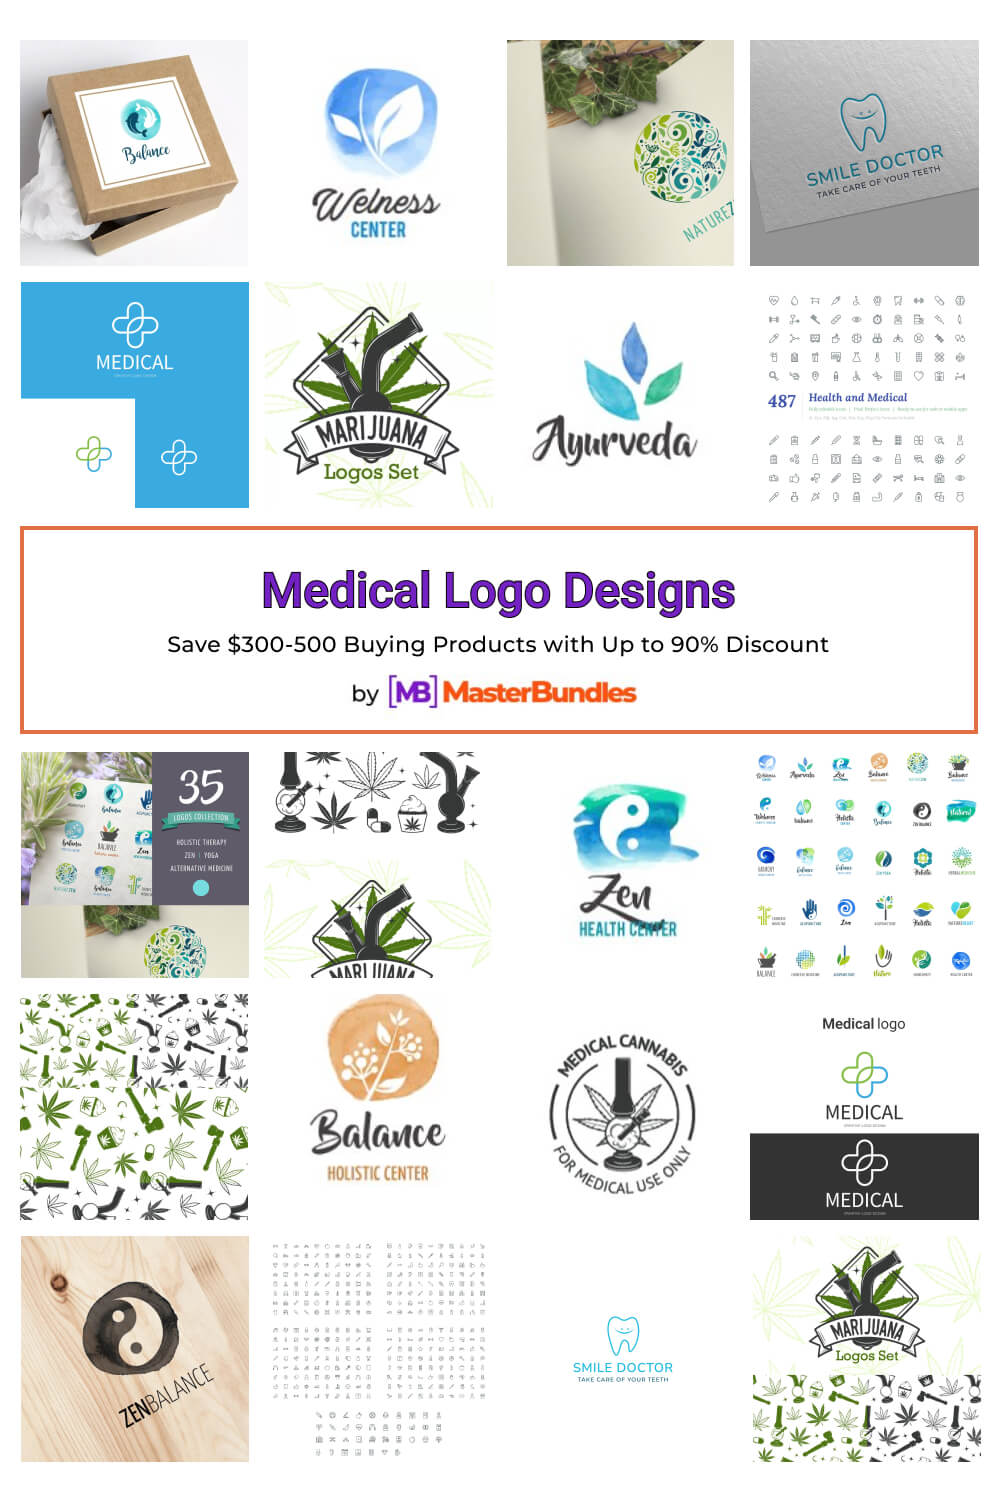 medical logo designs pinterest image.